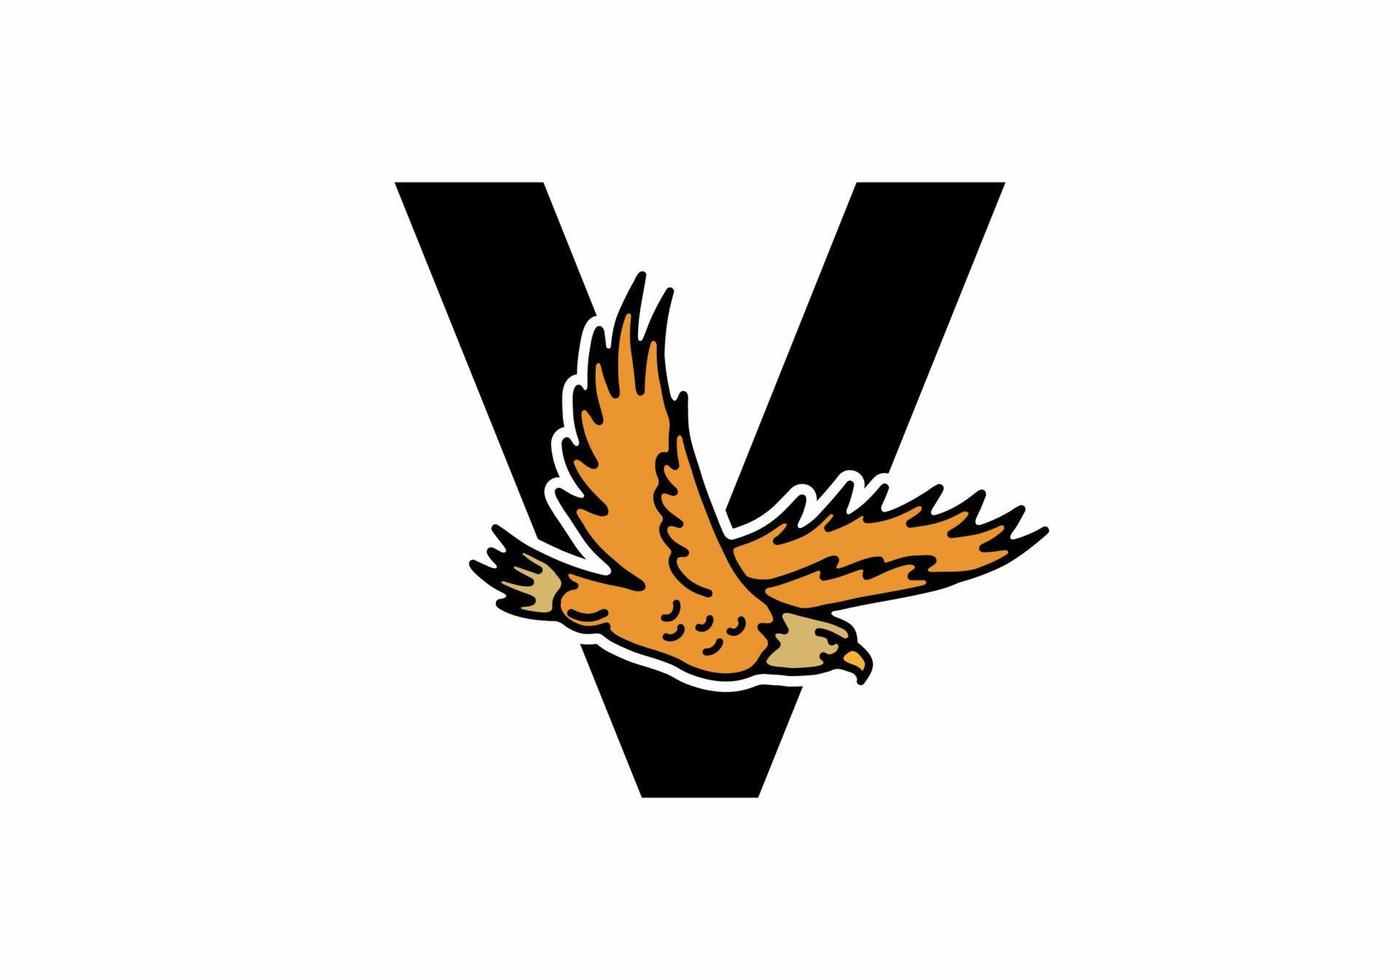 Strichzeichnungen Illustration des fliegenden Adlers mit v Anfangsbuchstaben vektor